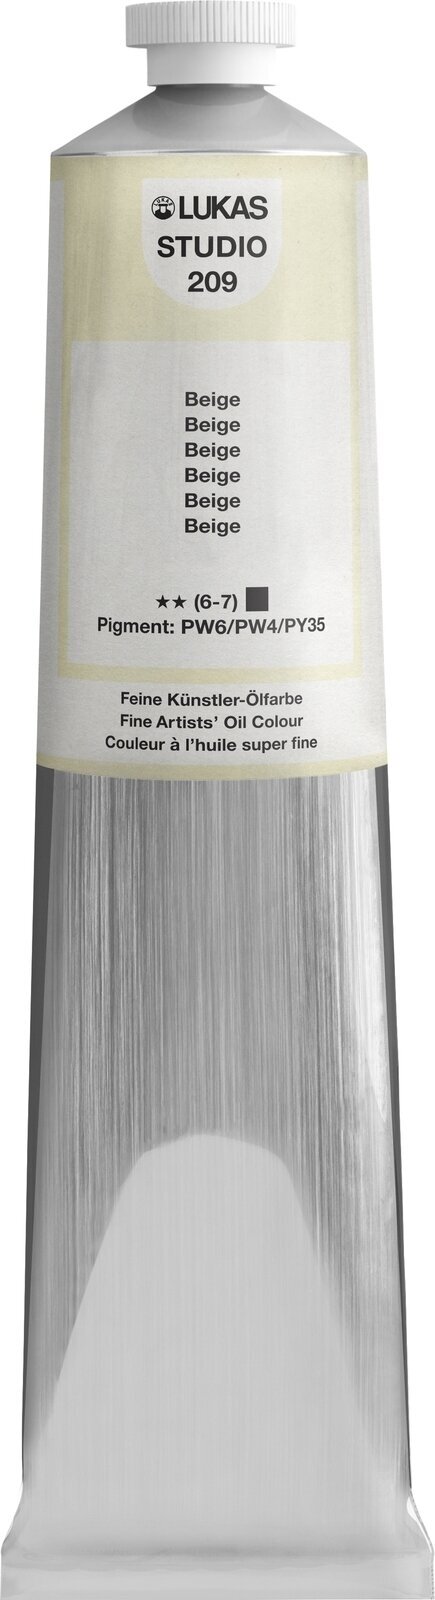 Ölfarbe Lukas Studio Oil Paint Aluminium Tube Ölgemälde Beige 200 ml 1 Stck